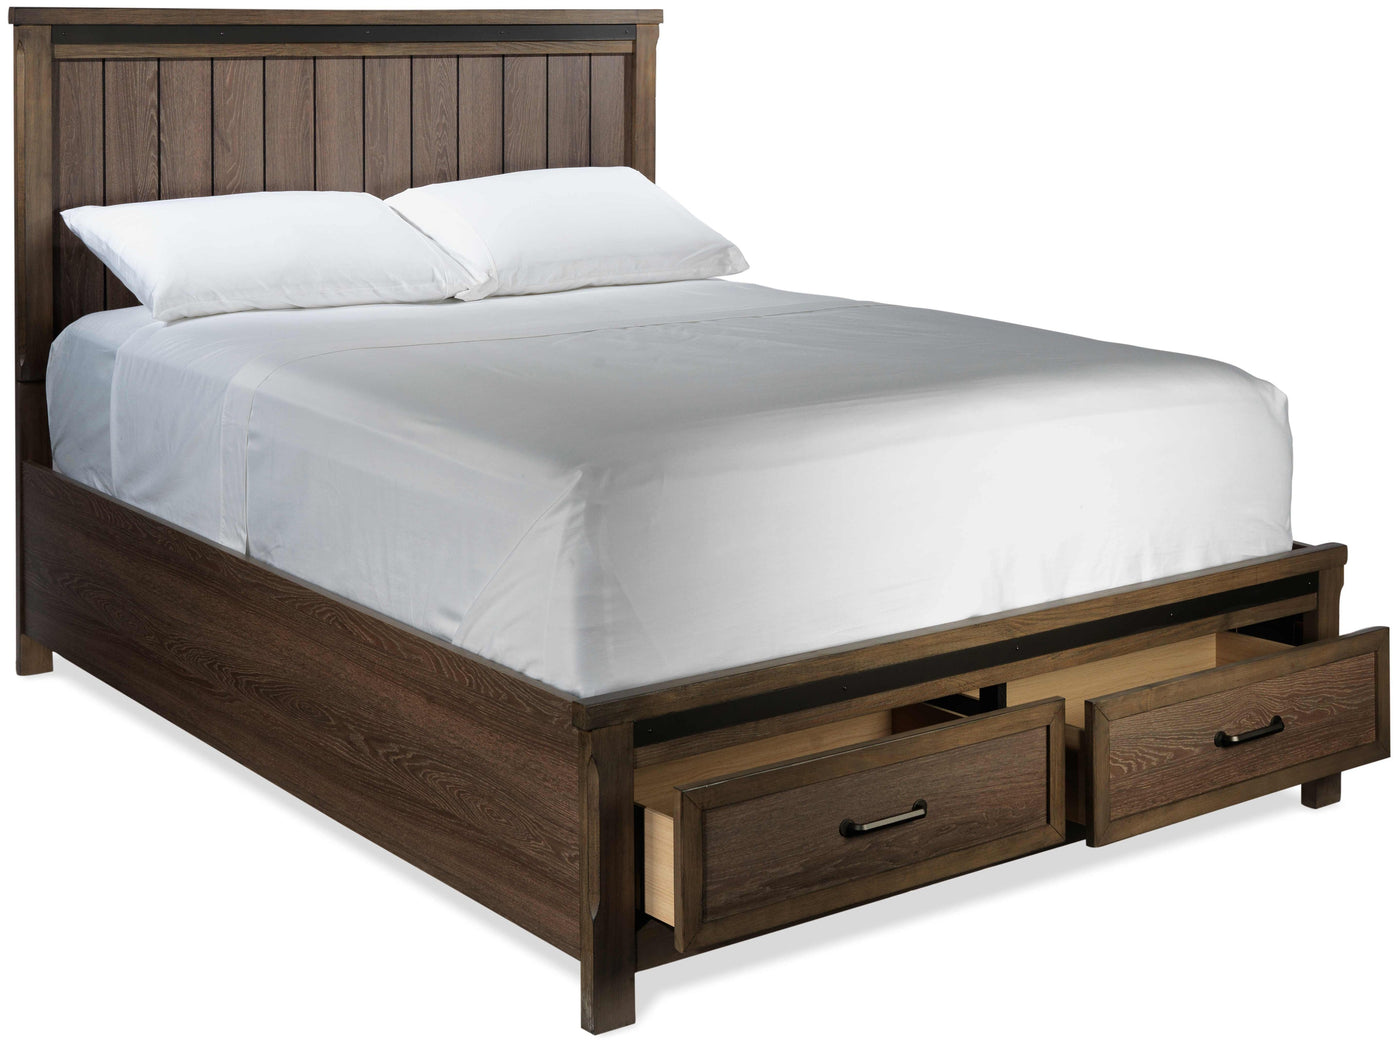 Rossco 3-Piece Queen Storage Bed - Rustic Oak